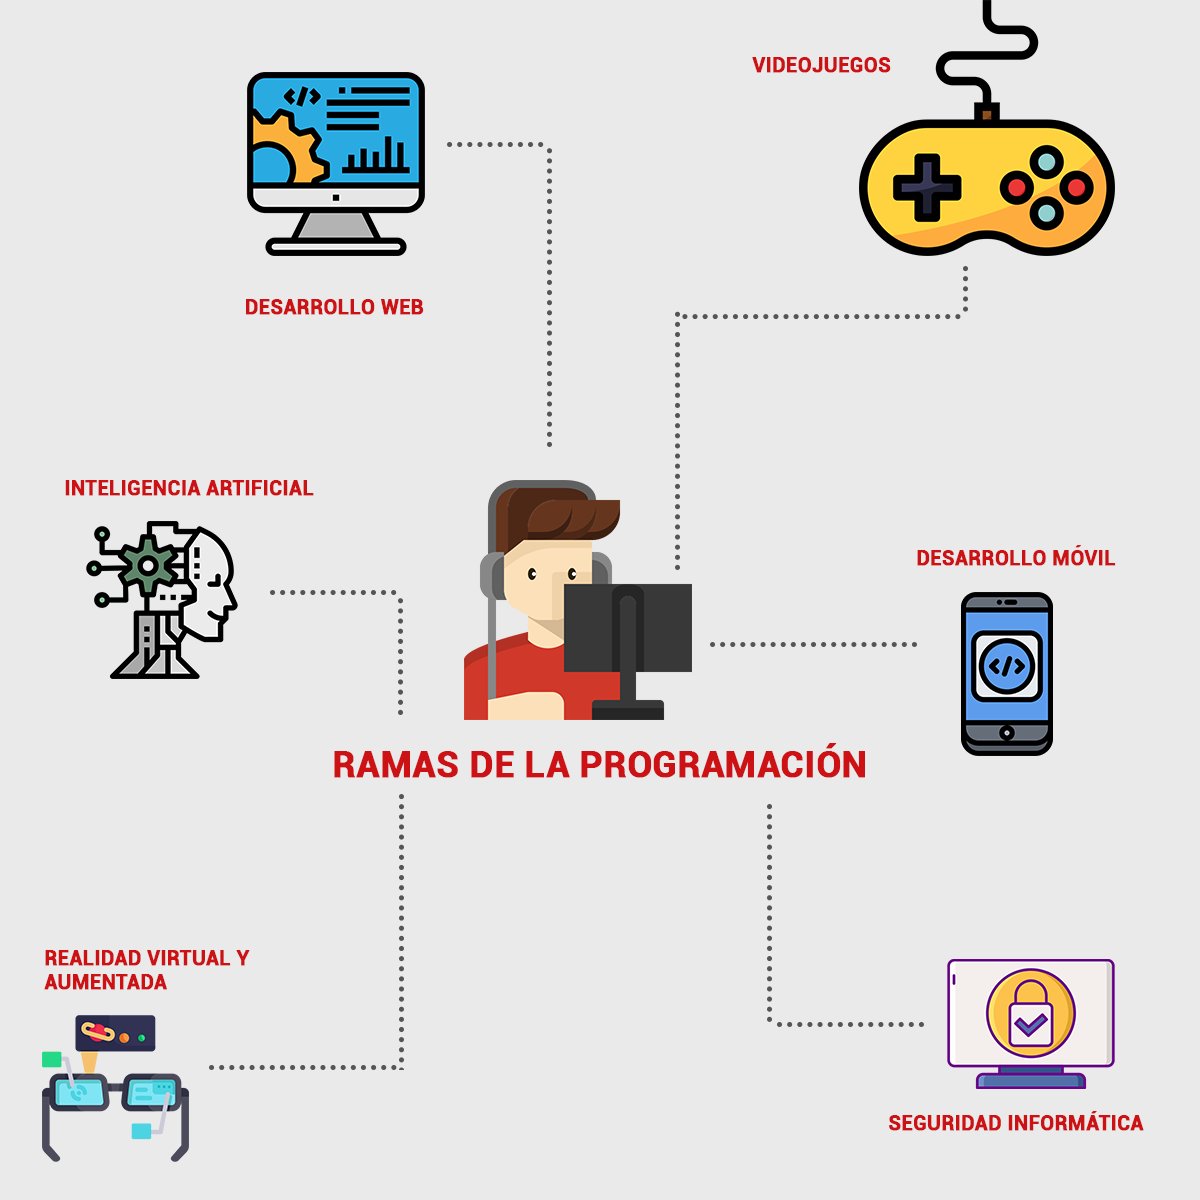 Fabio Alcocer Sejas ᅠ on Twitter: "¿Cómo empezar a aprender programar, donde, cómo, que hacer para conseguir empleo, cuánto tiempo se tarda? 😥 responder a todas estas preguntas en este